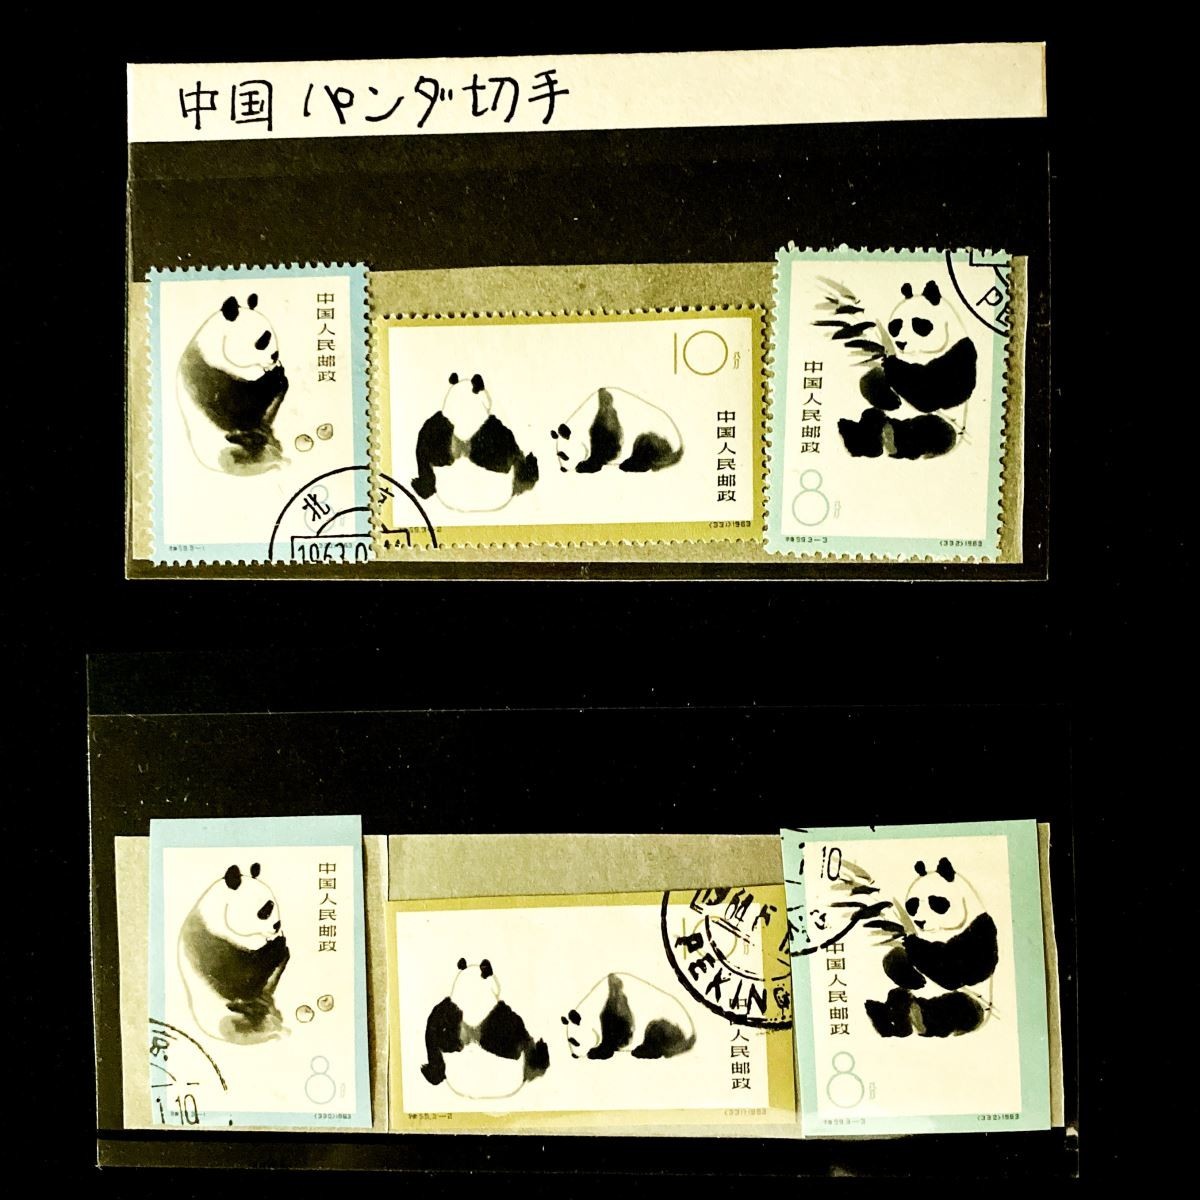 中国切手オオパンダ1963年、特59消印有り、3種完